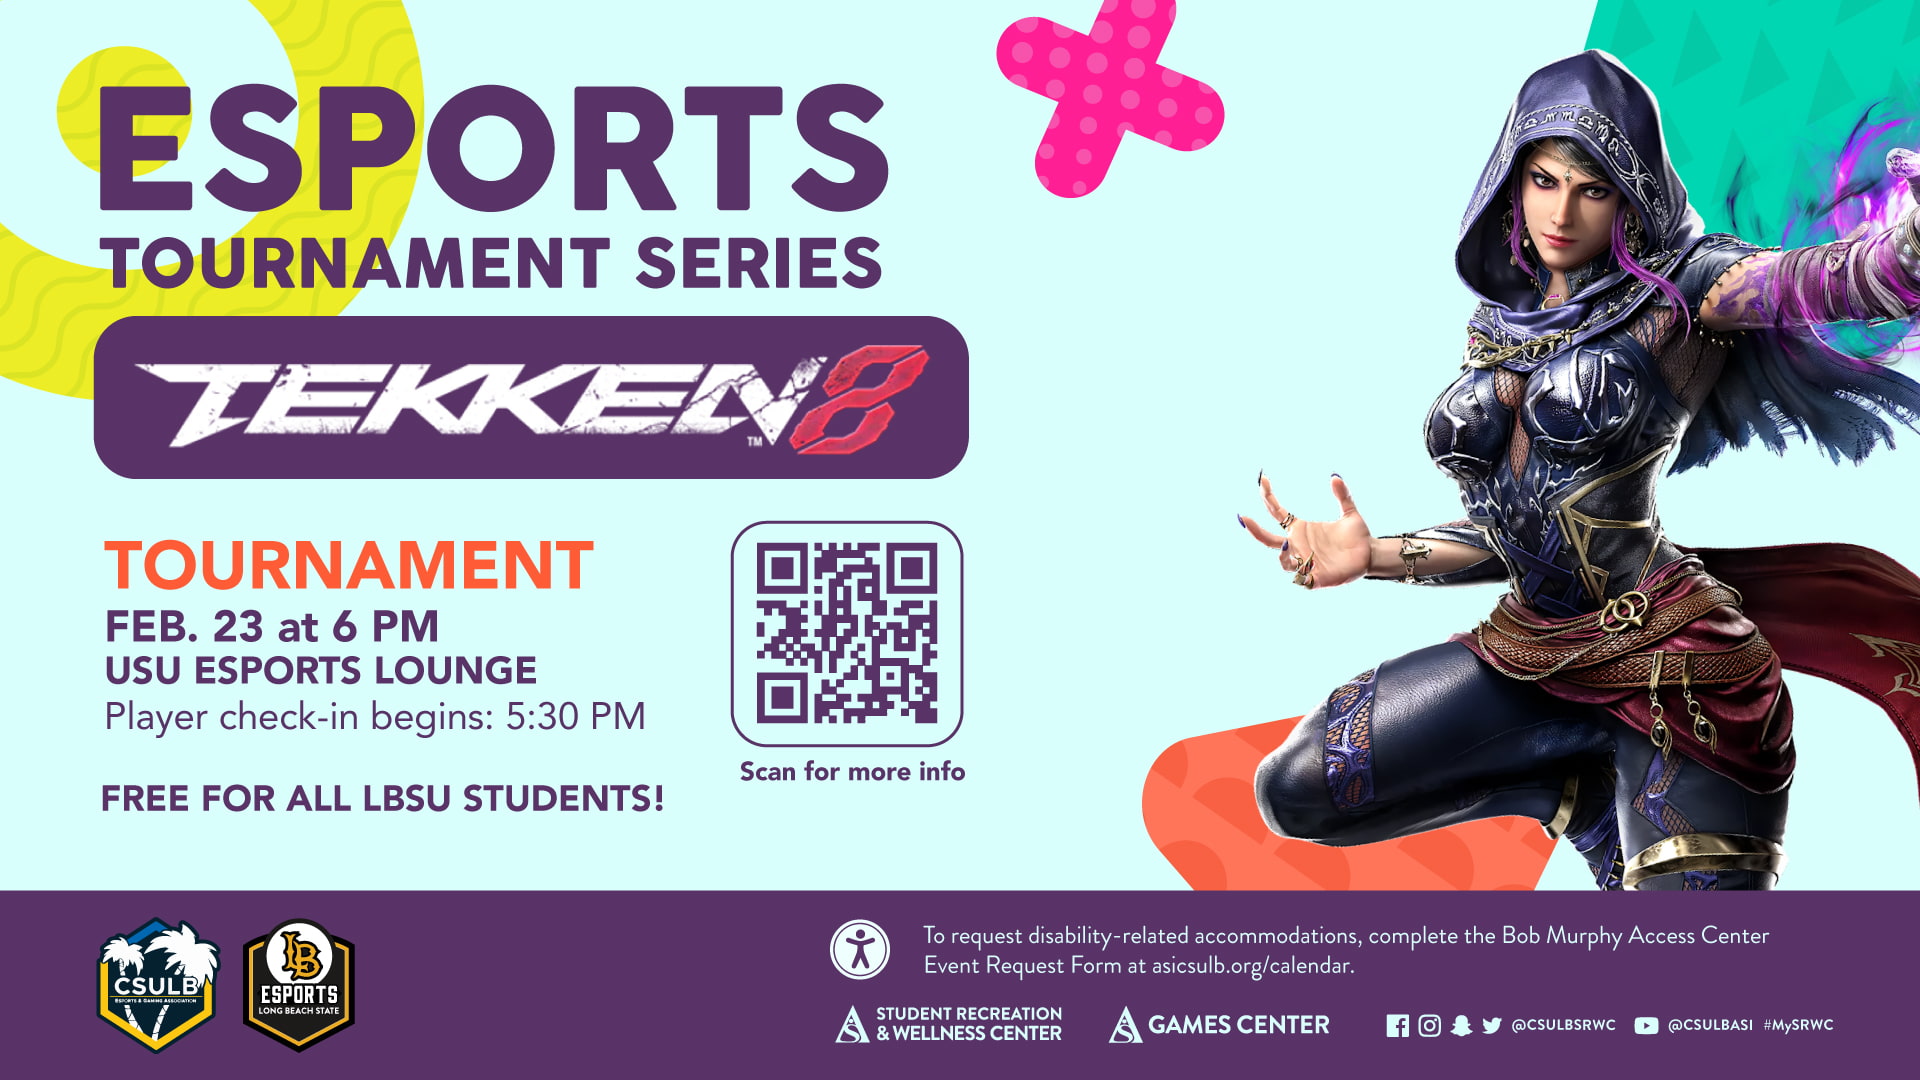 Esports Tournament Tekken 8